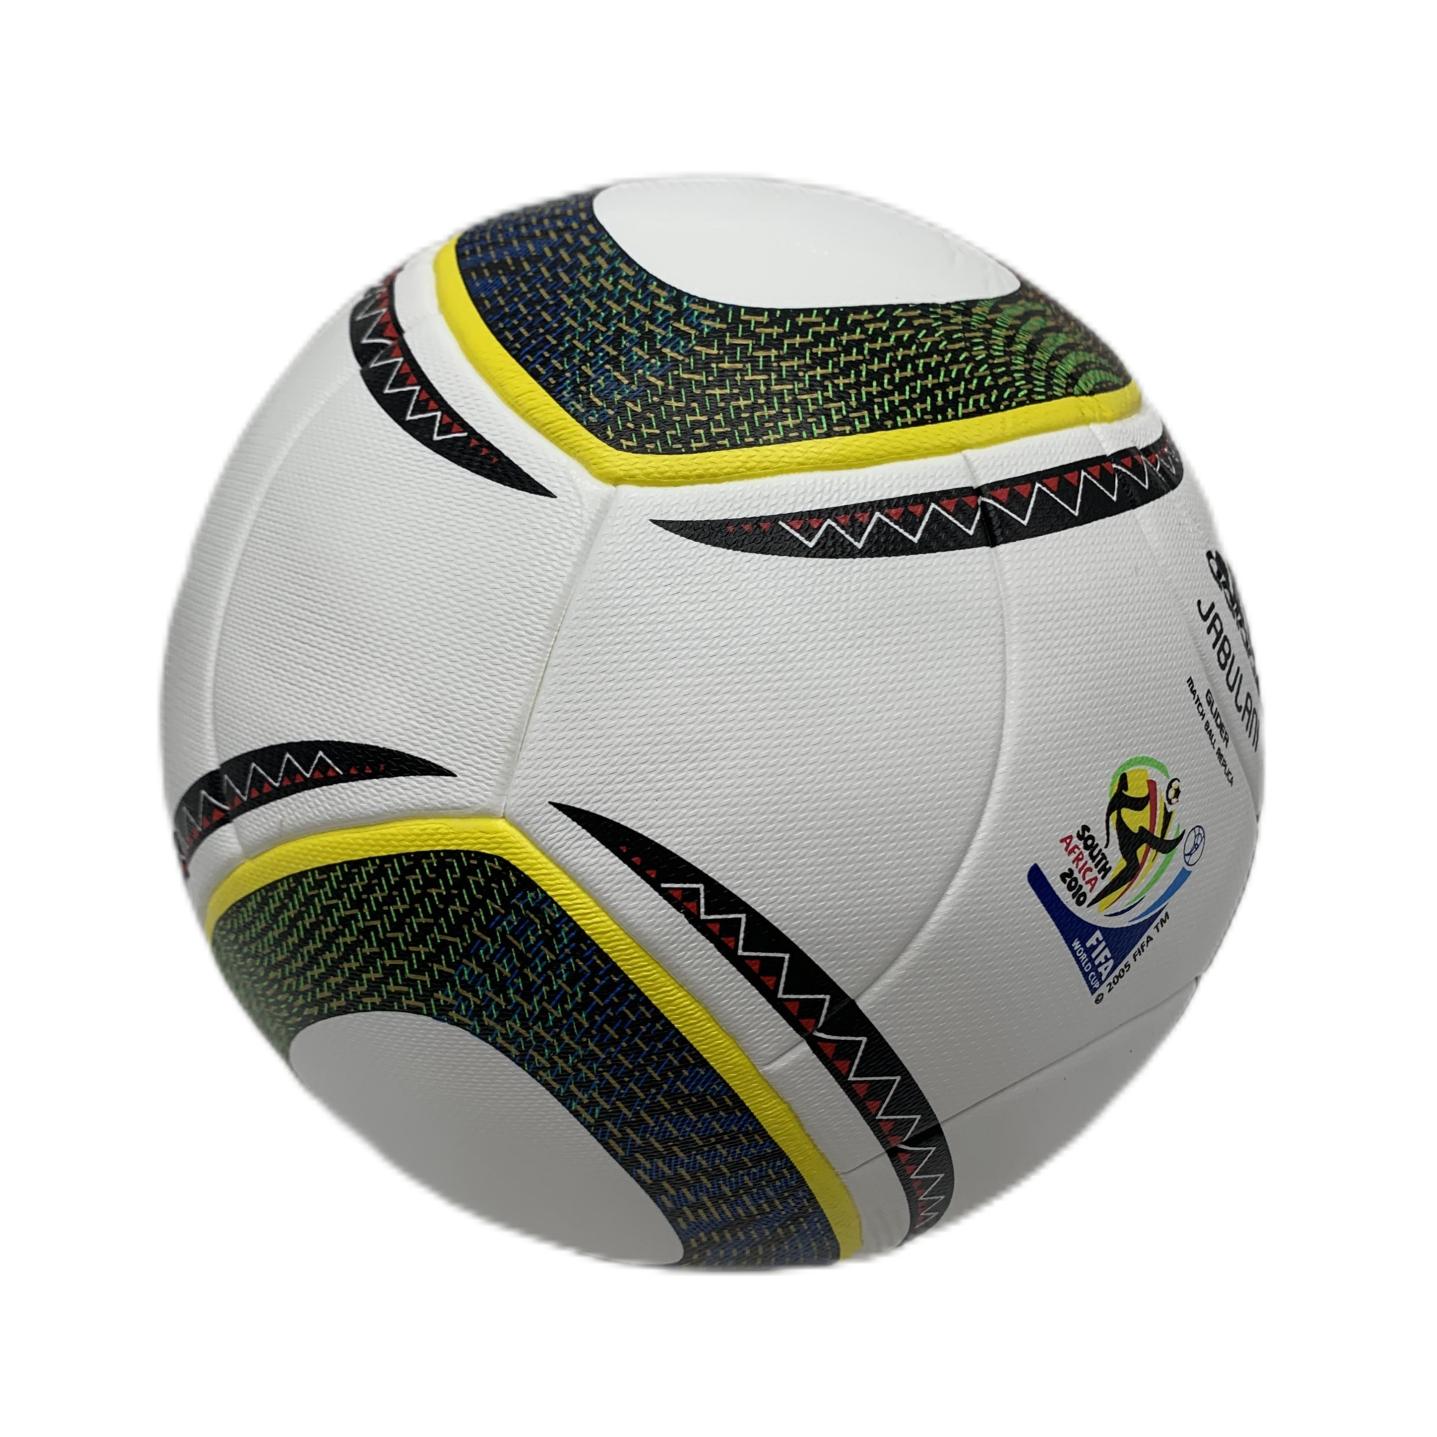 Ballons de football en gros 2022 R World Authentique Taille 5 Match Football Matériau de placage HILM et AL RIHLA JABULANI BRAZUCA32323